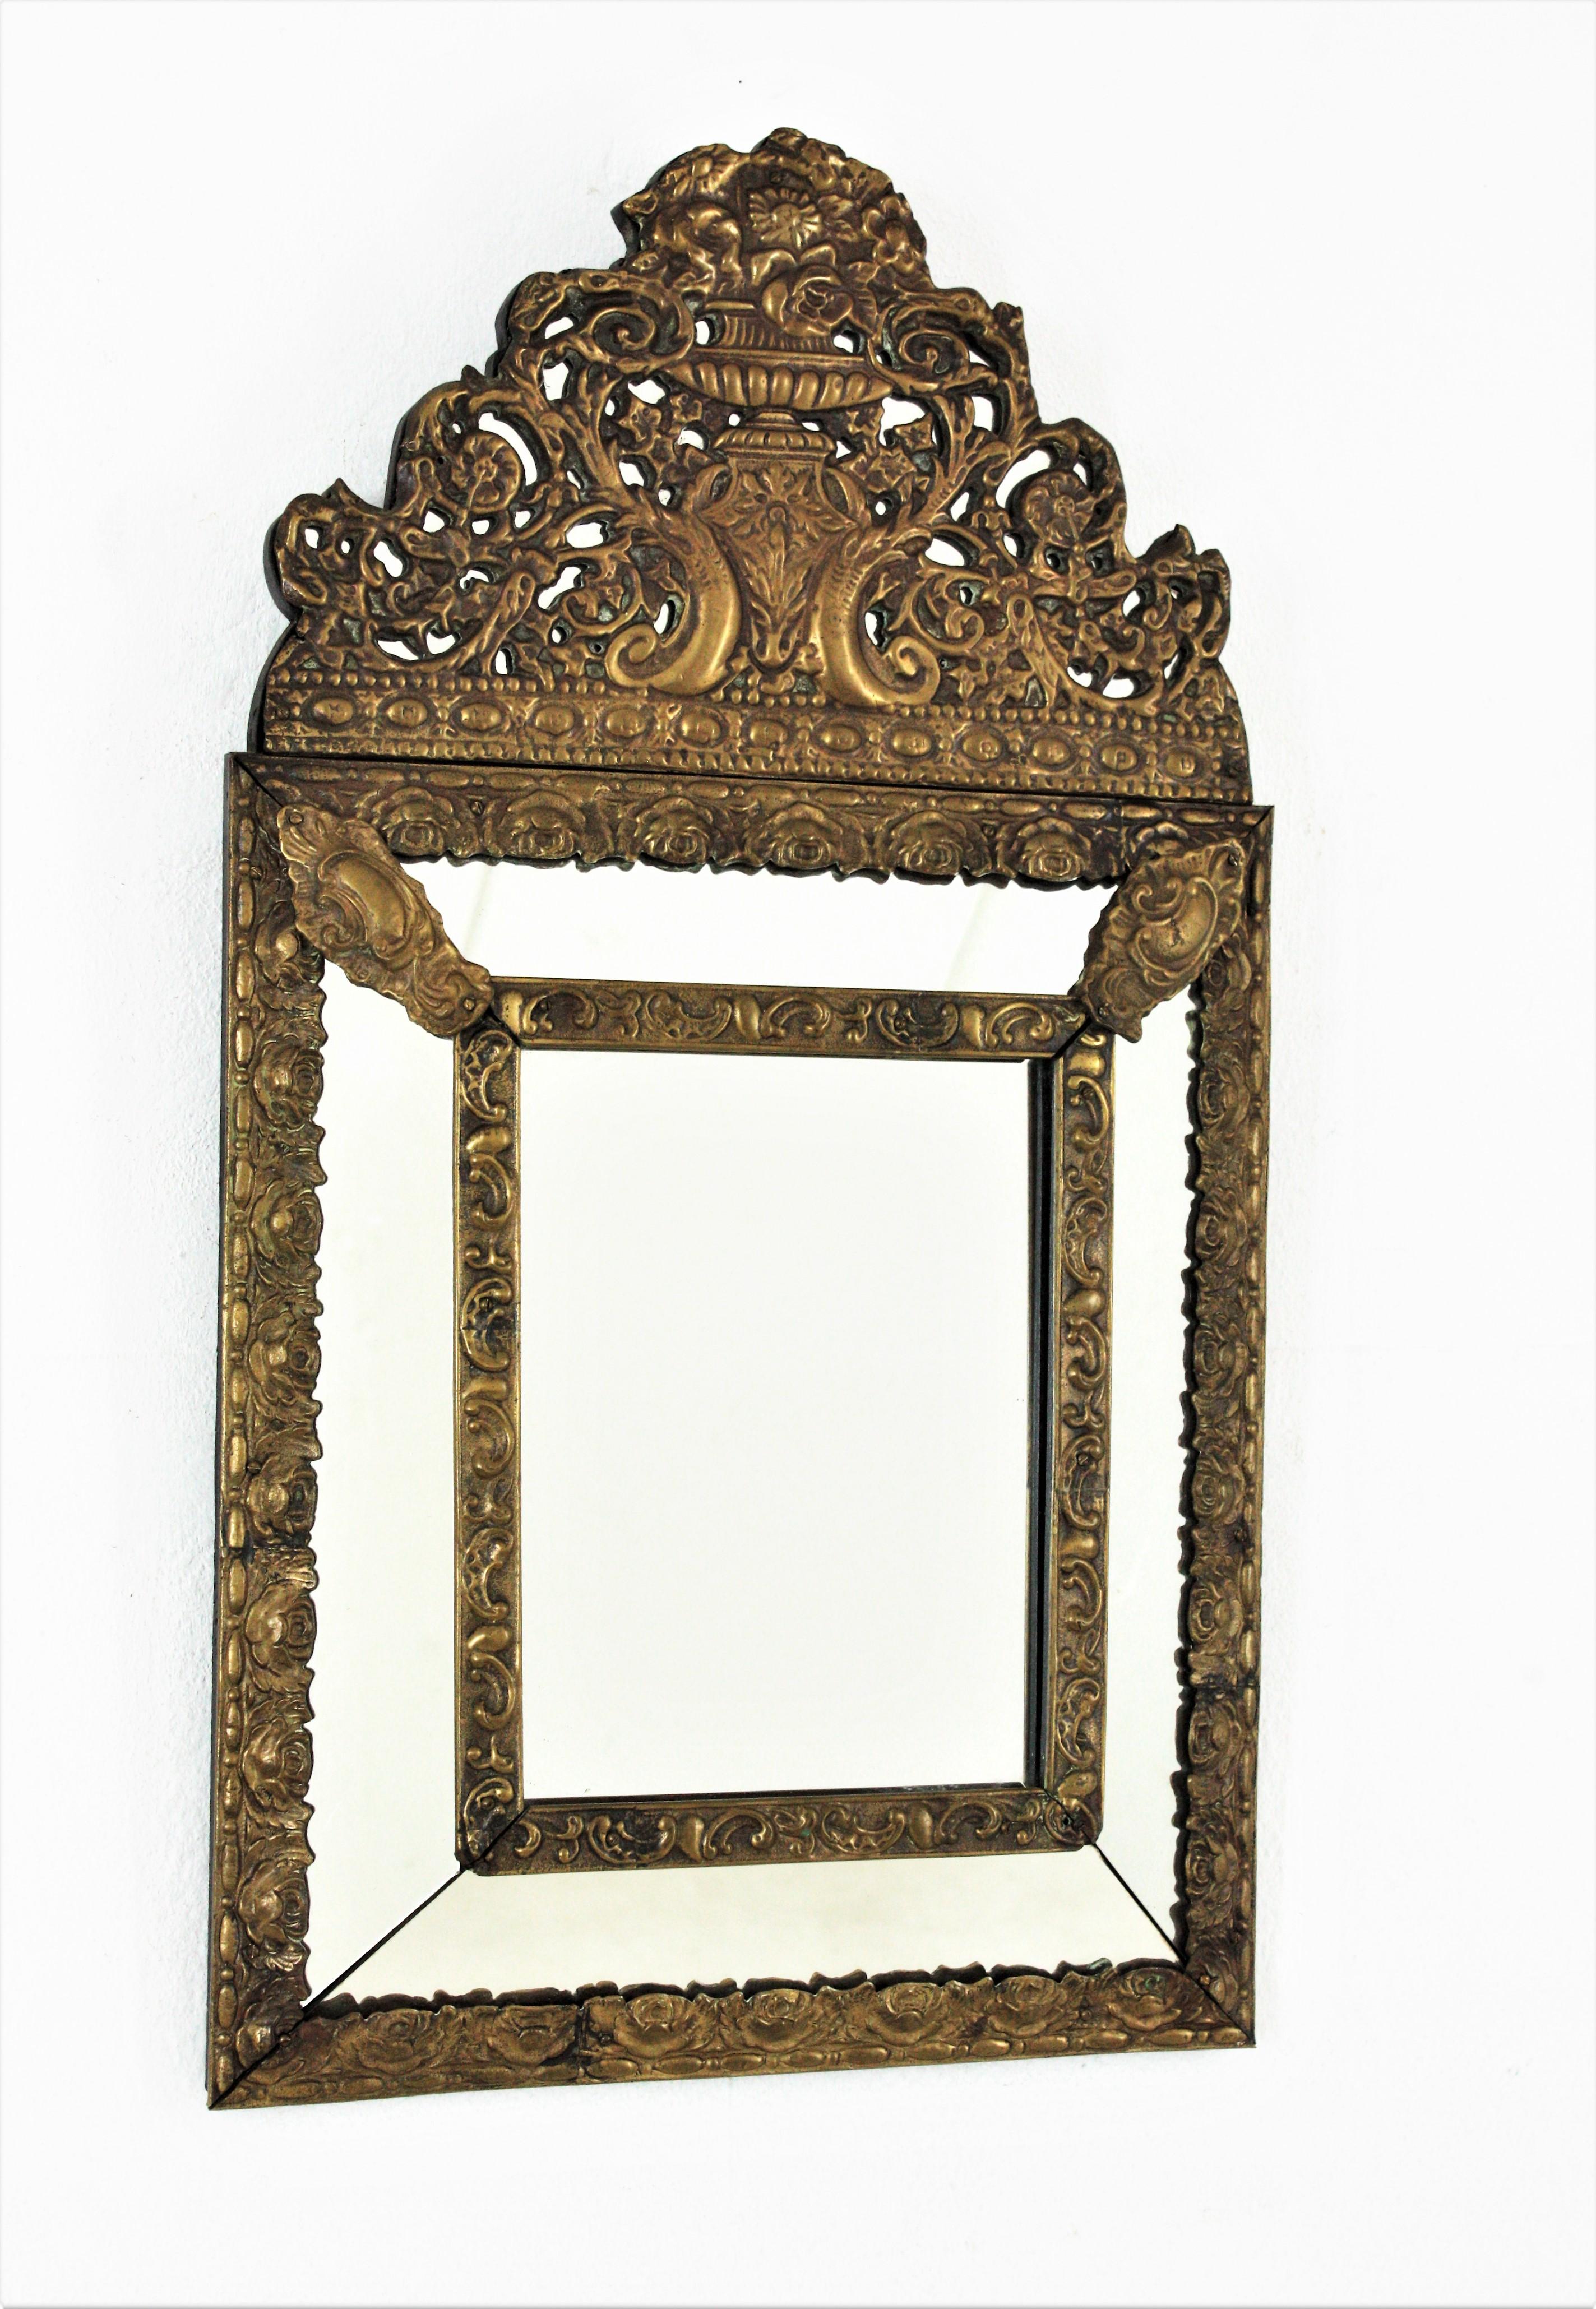 Élégant miroir Napoléon III composé d'une glace centrale et de quatre glaces rectangulaires reliées entre elles par des motifs floraux en laiton repoussé décoratif, une élégante crête en laiton repoussé filigrané.
Ce miroir ornementé est en très